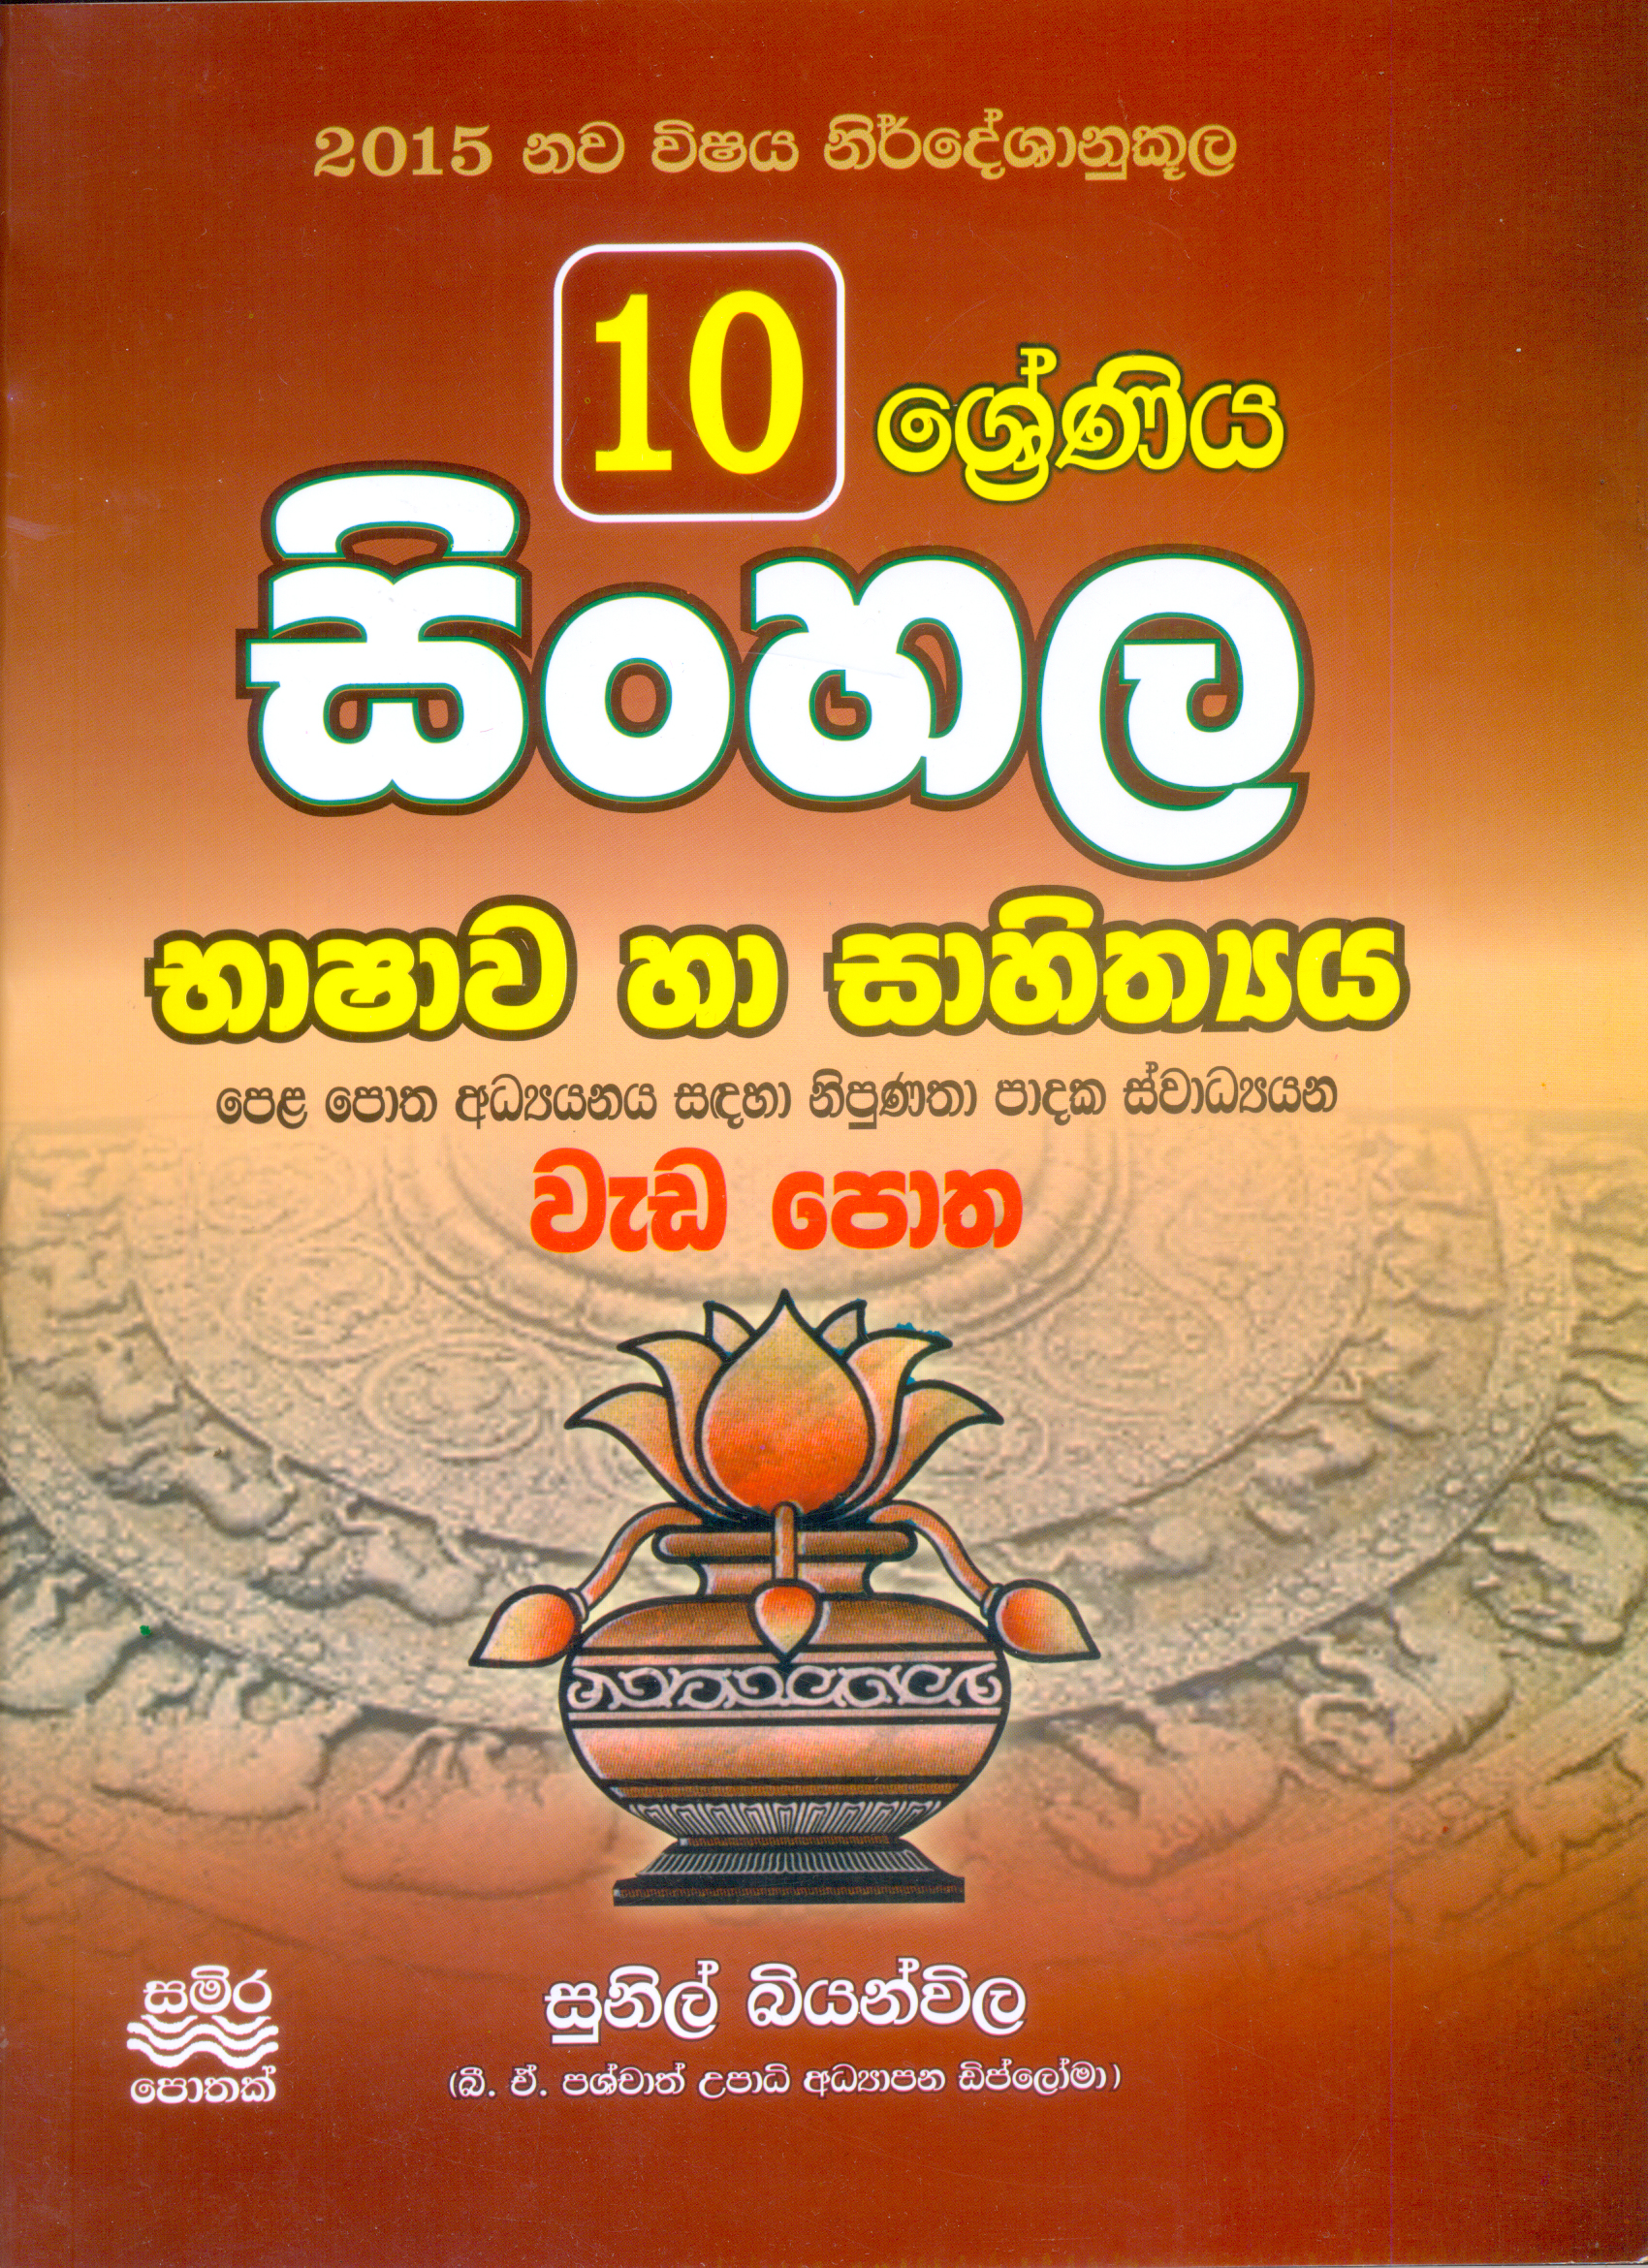 10 Shreniya Sinhala Bashawa ha Sahithyaya Wada Potha 2015 Nawa Nirdeshaya